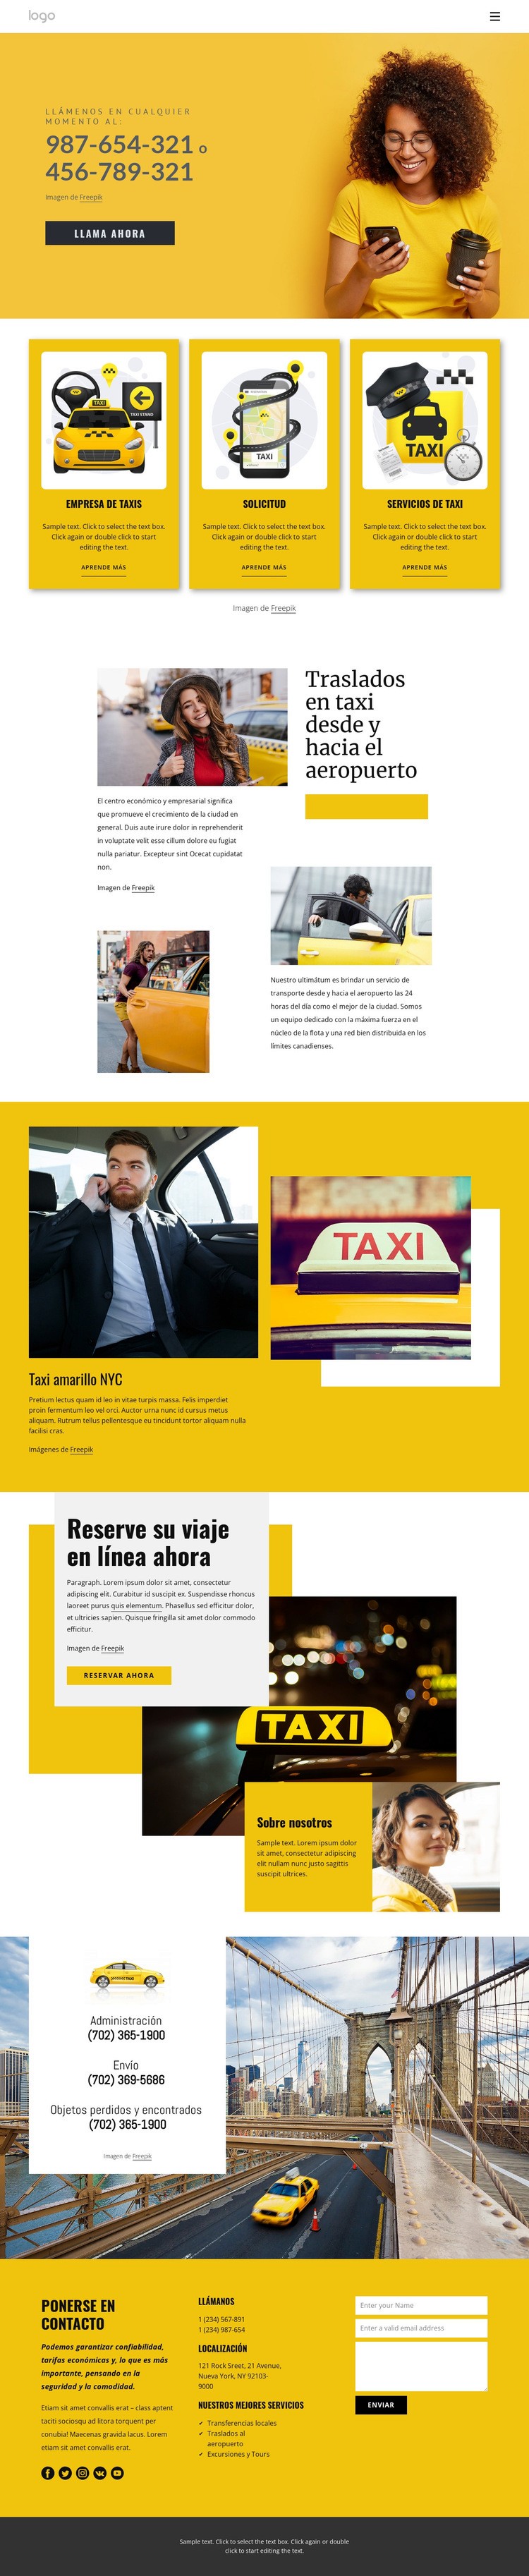 Servicio de taxi de calidad Diseño de páginas web